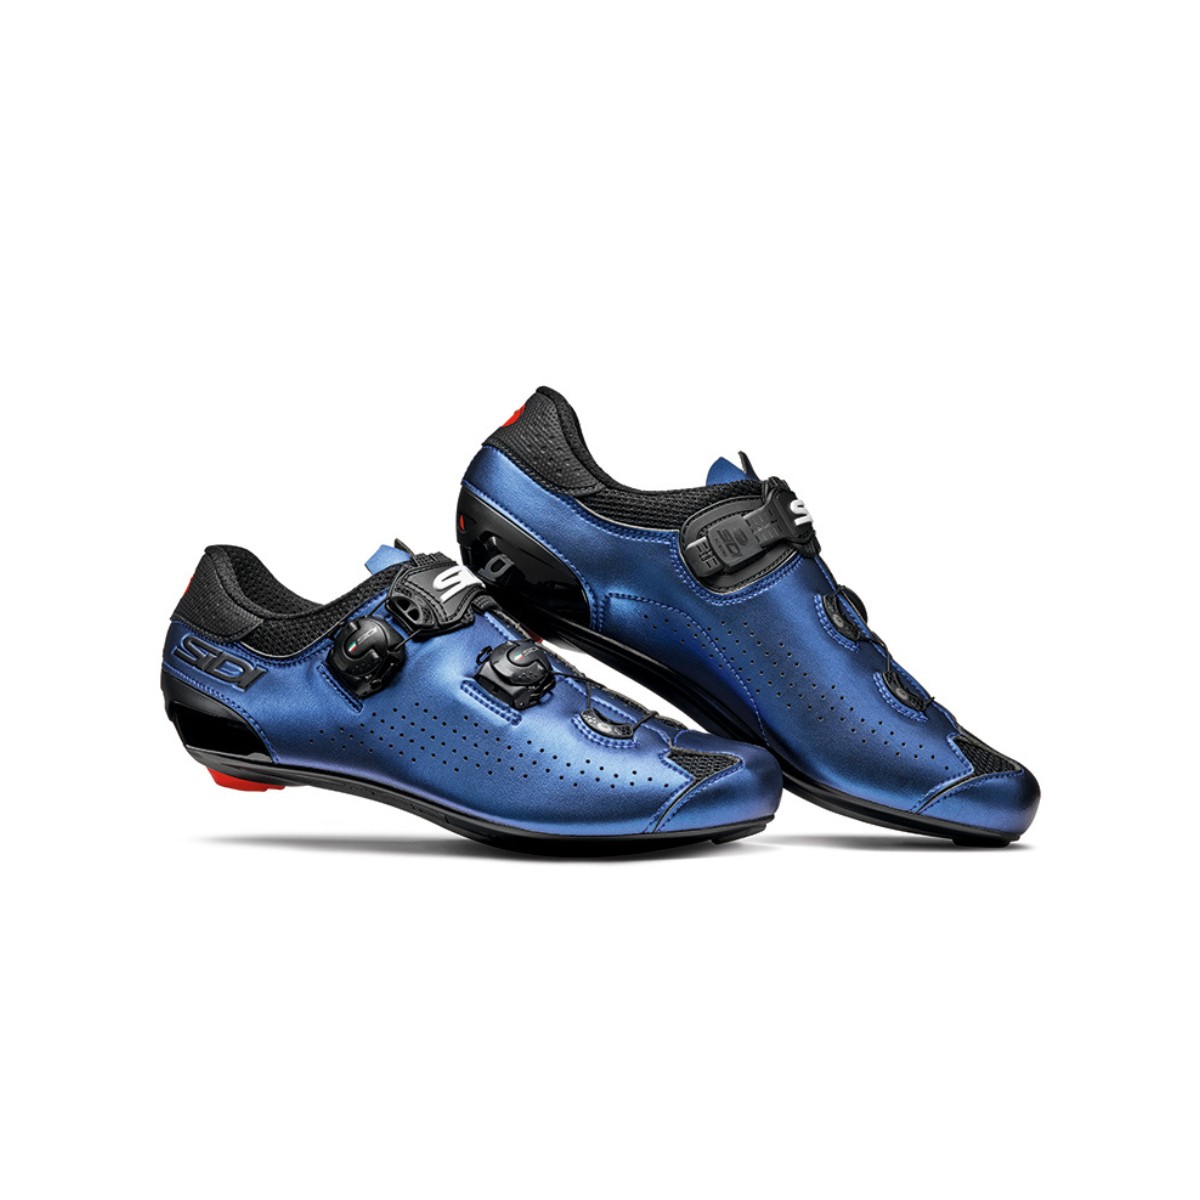 sidi chaussures sixty noir bleu - chaussures de cyclisme pour hommes, taille 41 - eur uomo